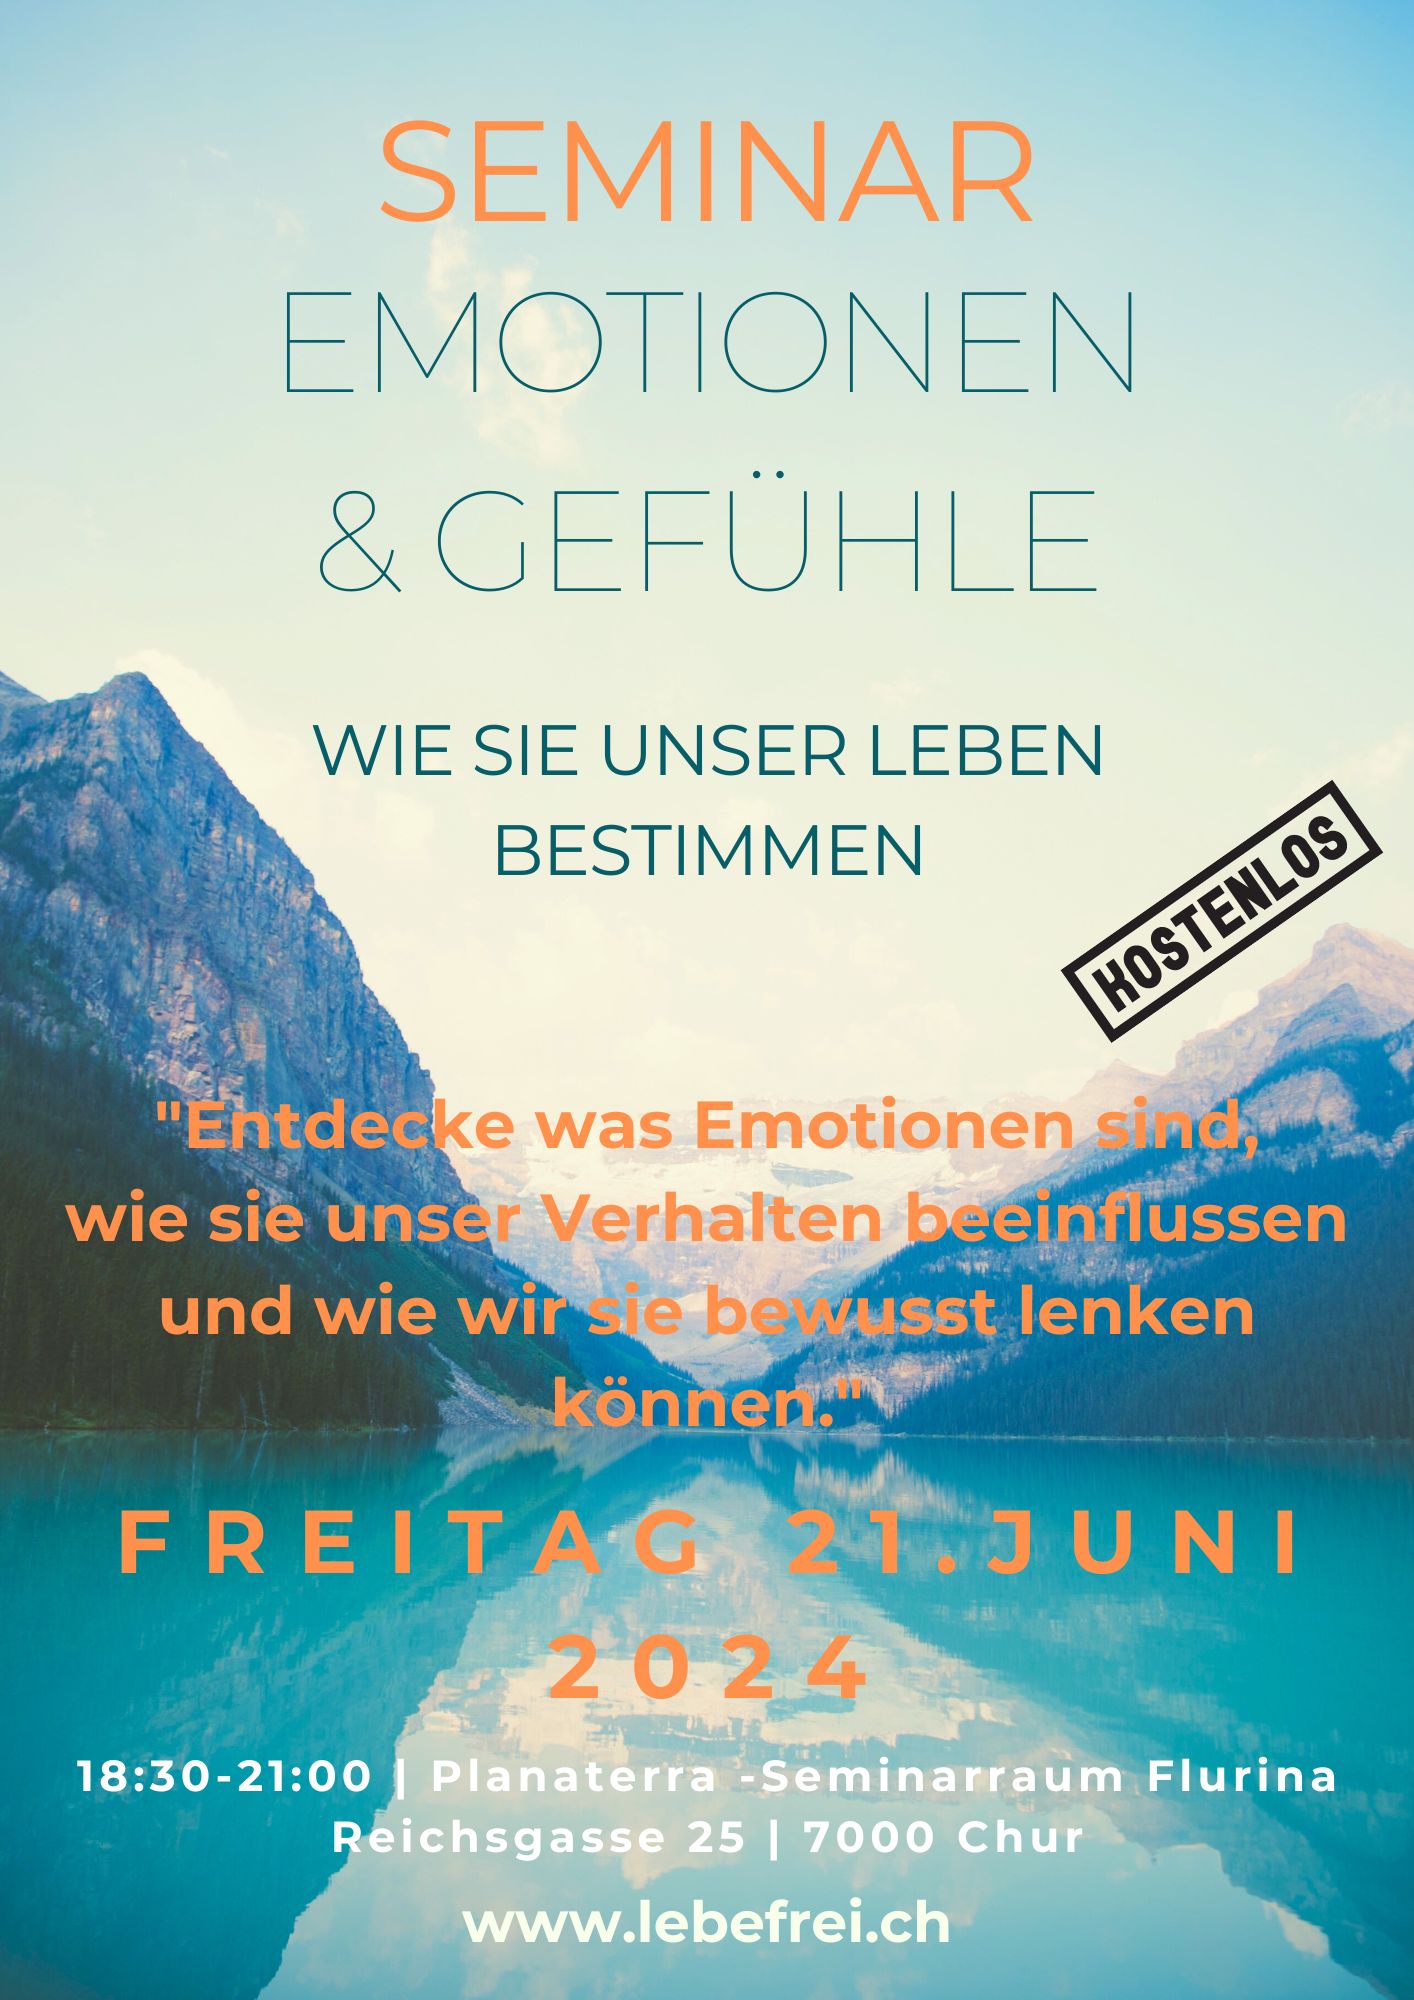 Kostenloses Seminar am Freitag 21. Juni 2024: Entdecke deine Welt der Emotionen und Gefühle!